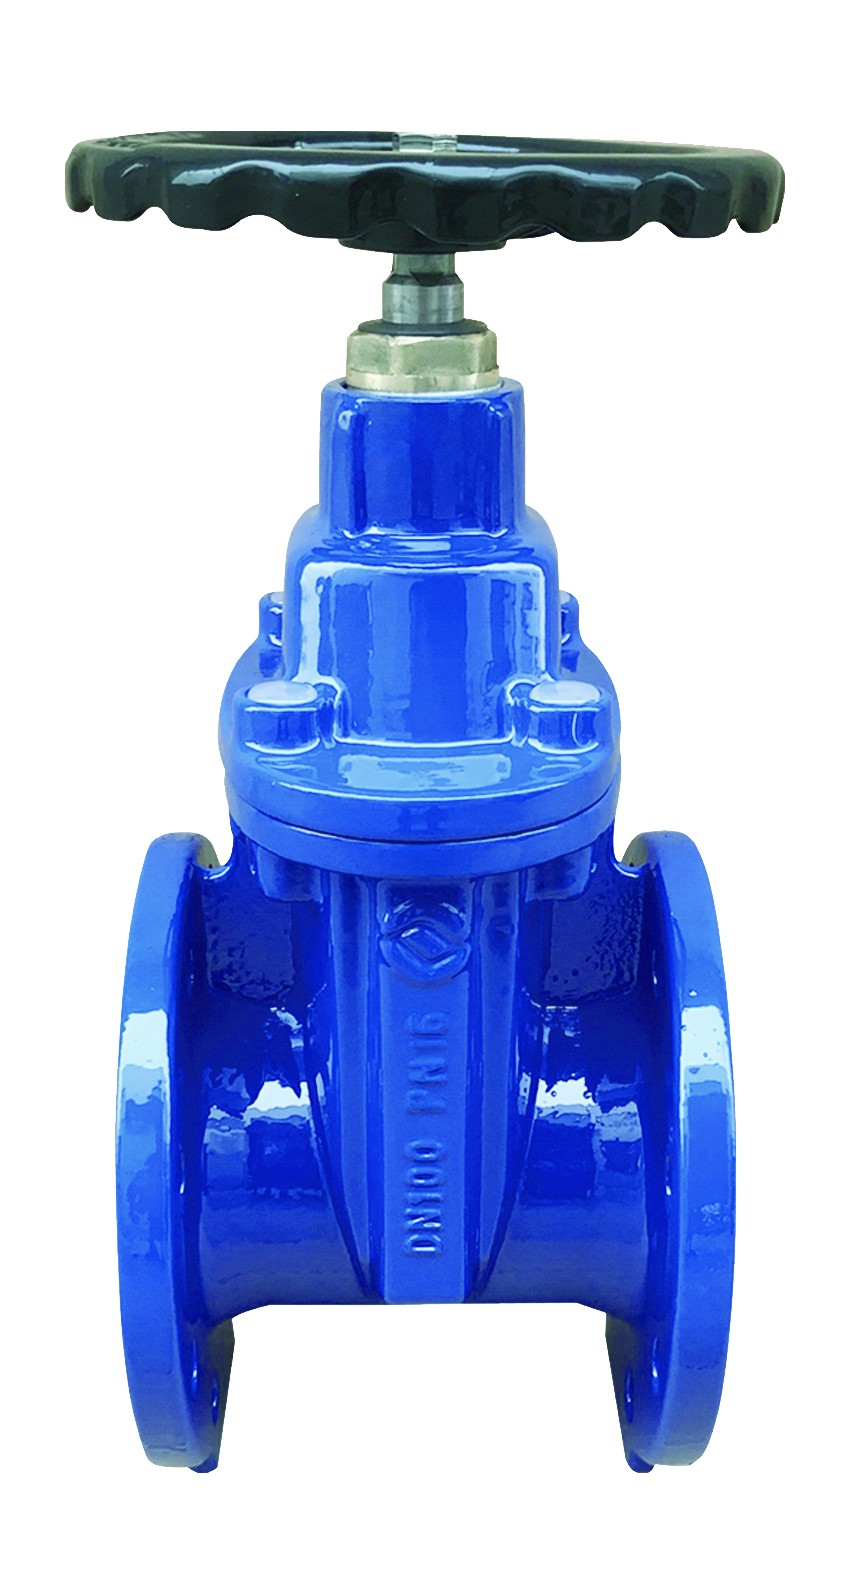 Rexroth M-SR30KE check valve